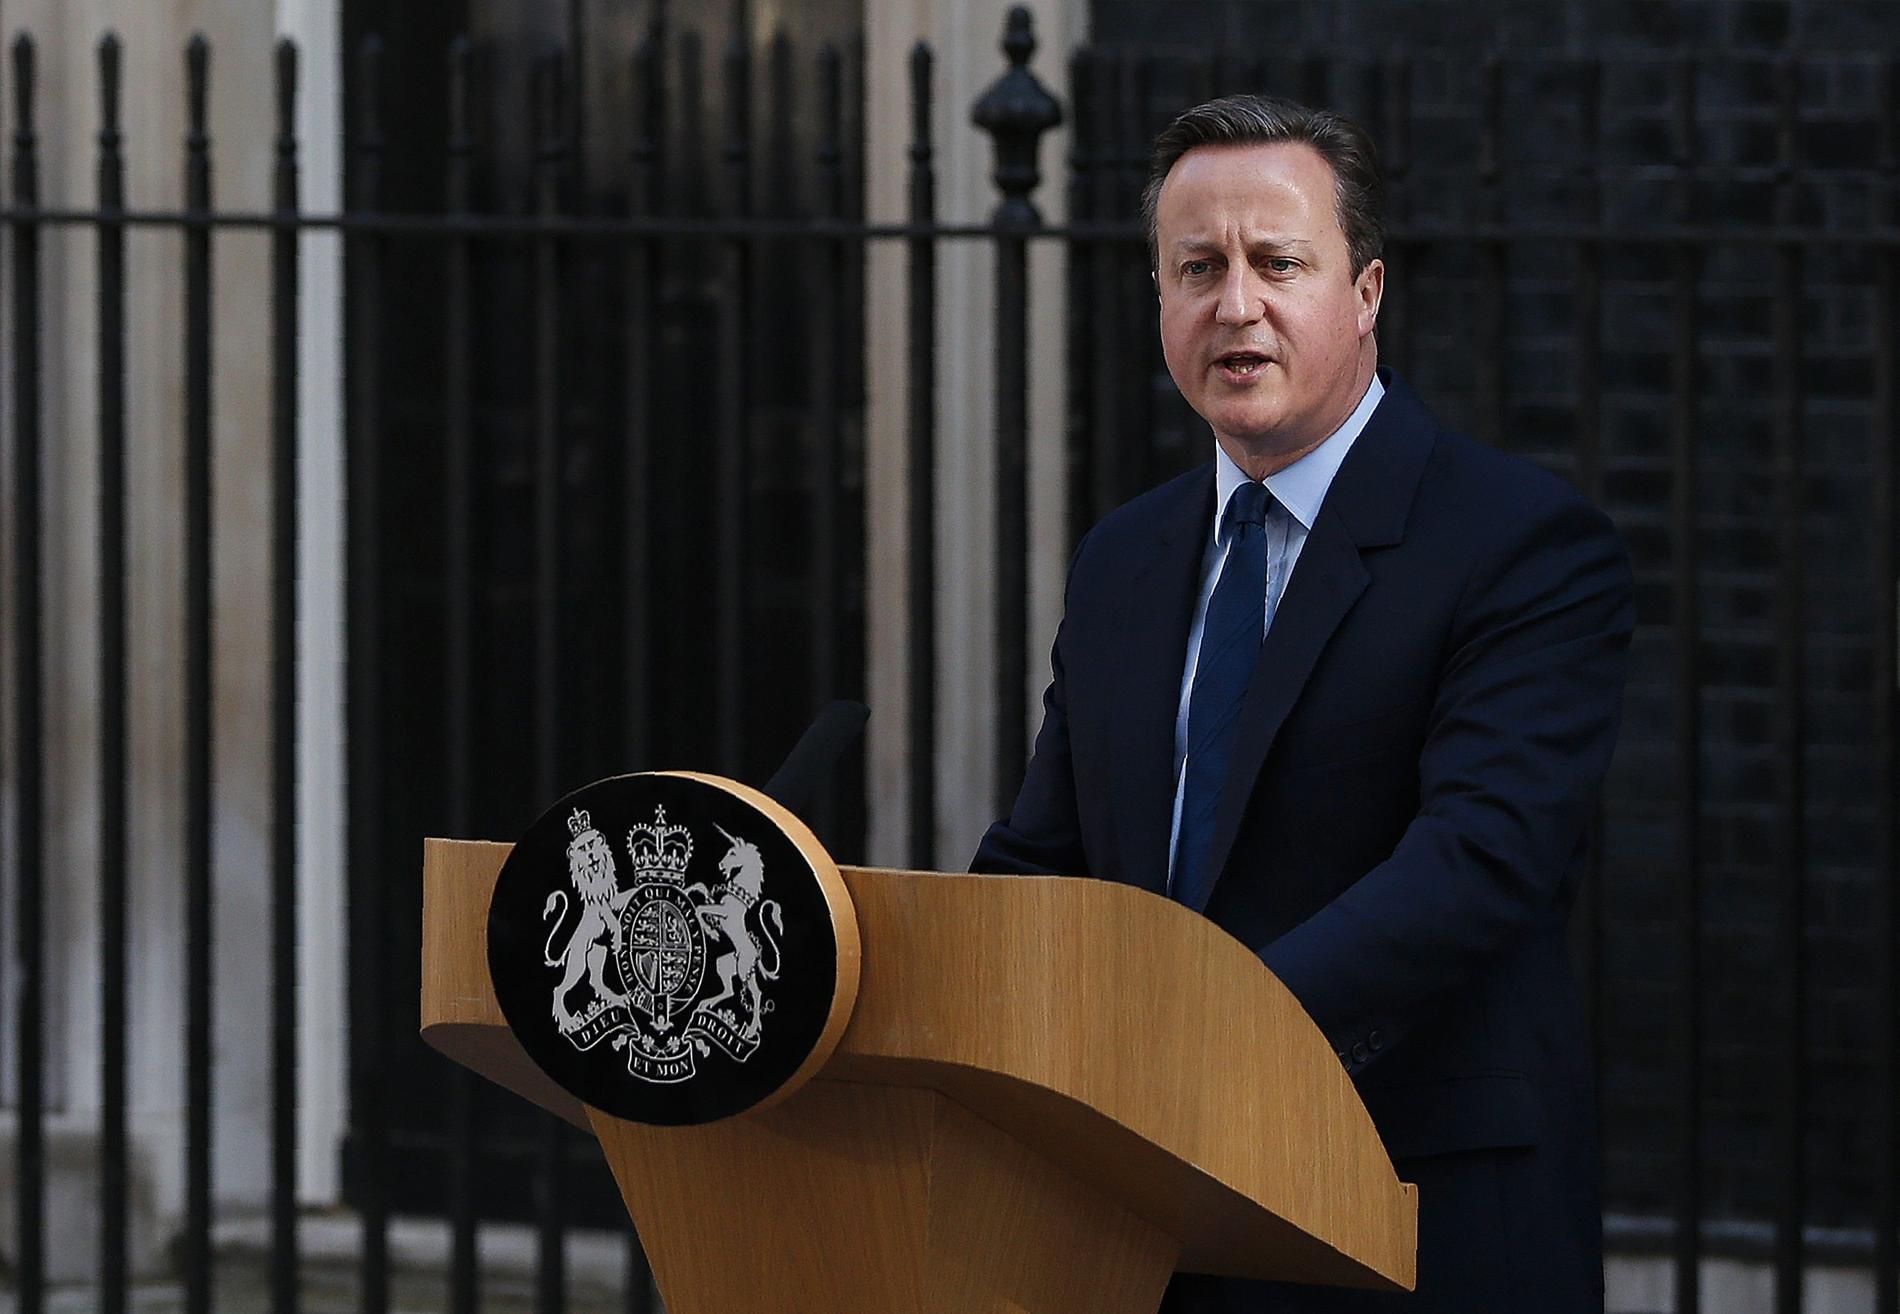 "Storbritannien behöver nytt ledarskap", sa David Cameron och meddelade att han avgår i oktober.